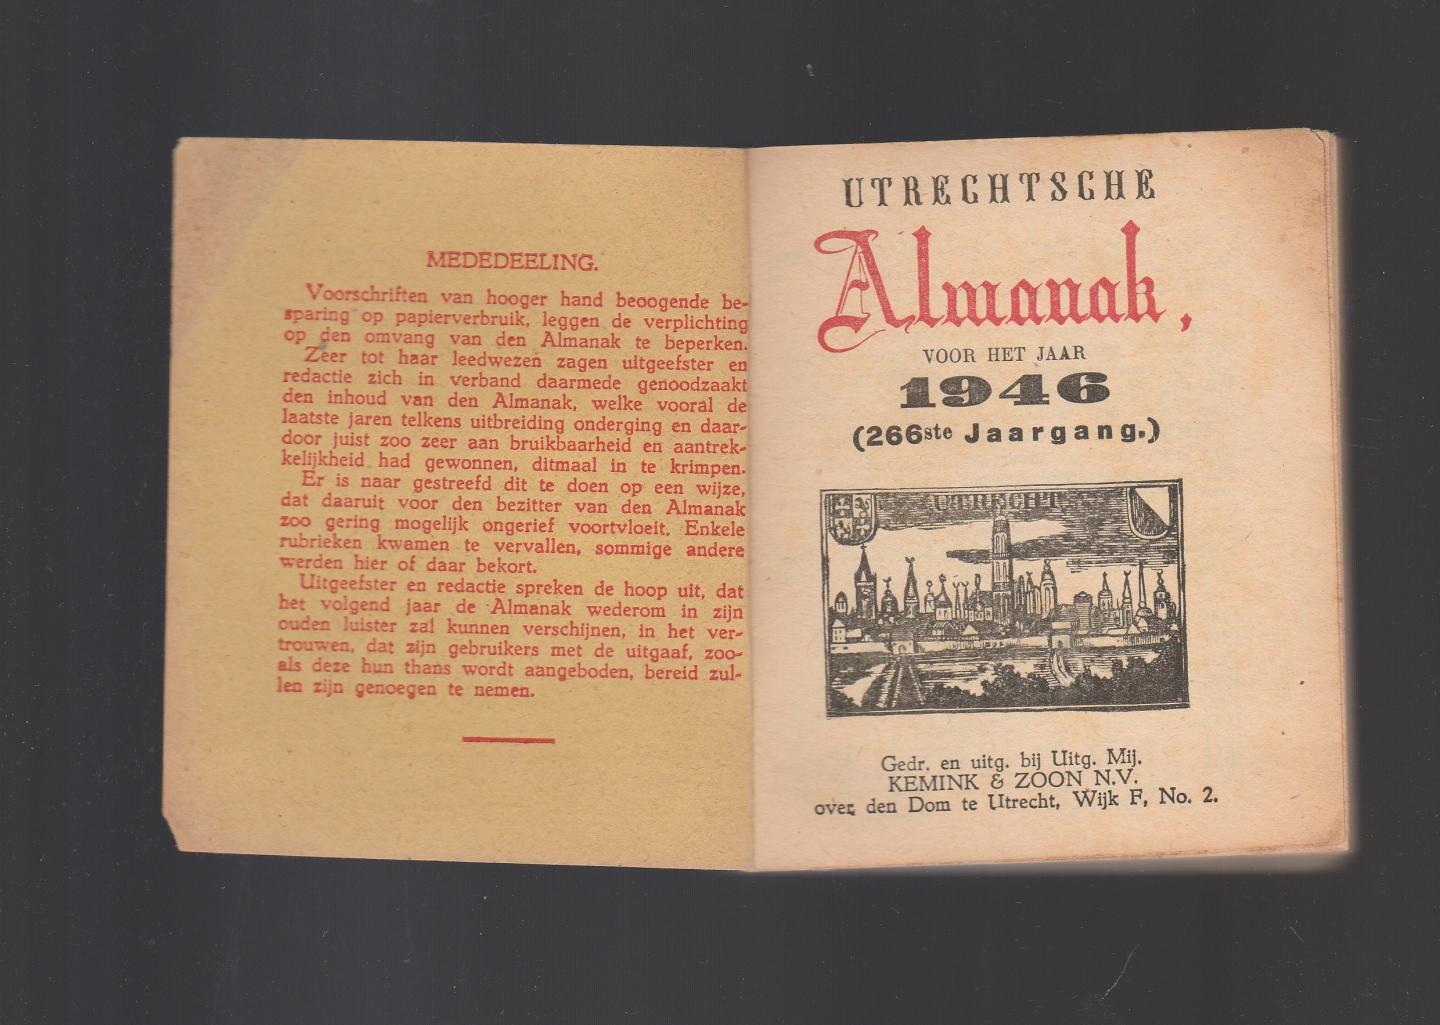  - Utrechtsche Almanak voor het jaar 1946